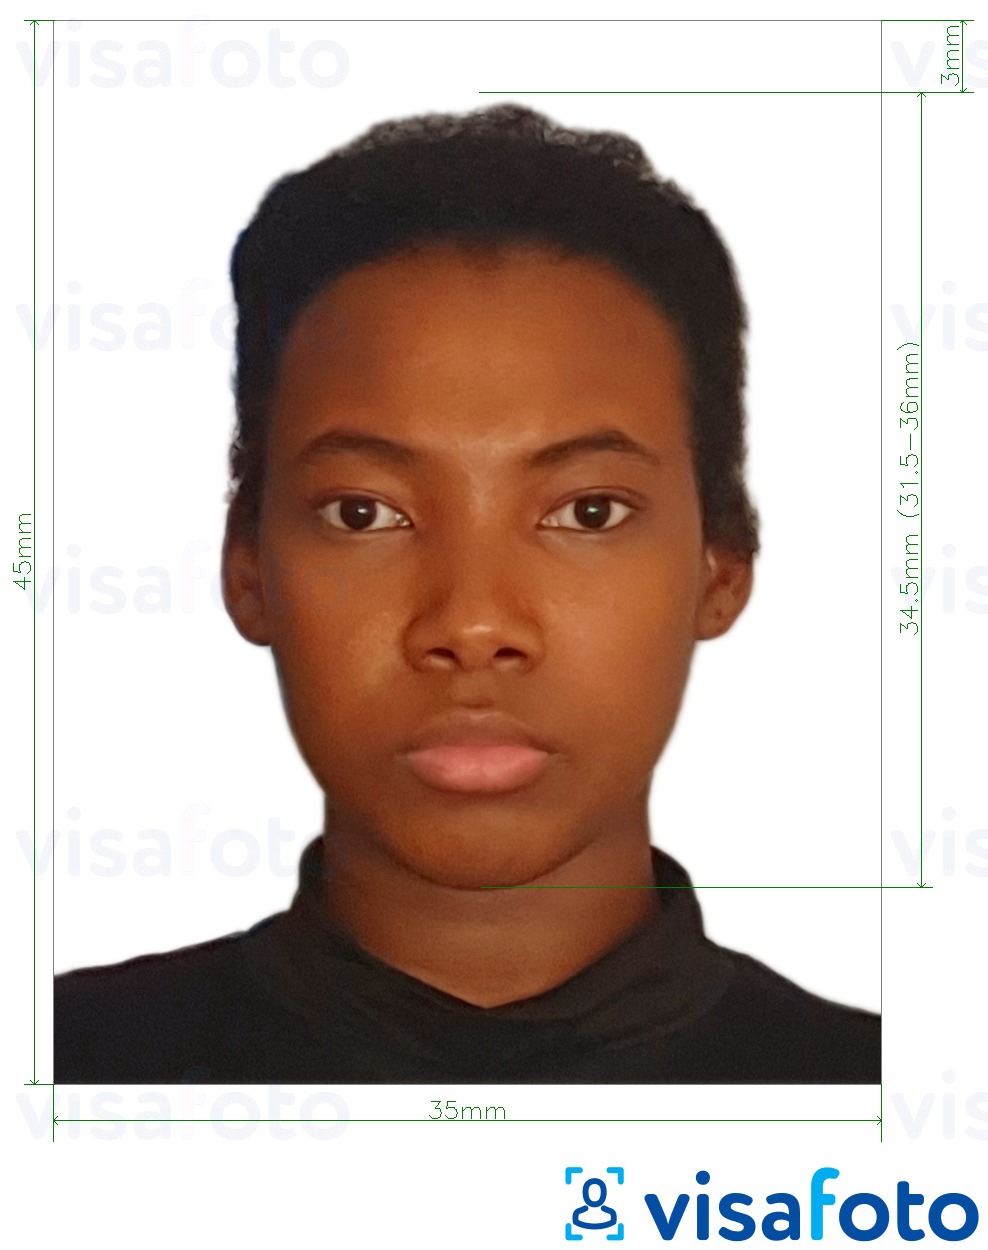 Contoh foto untuk Pasport Seychelles 35x45 mm (sehingga 45x50 mm) dengan spesifikasi saiz yang tepat.